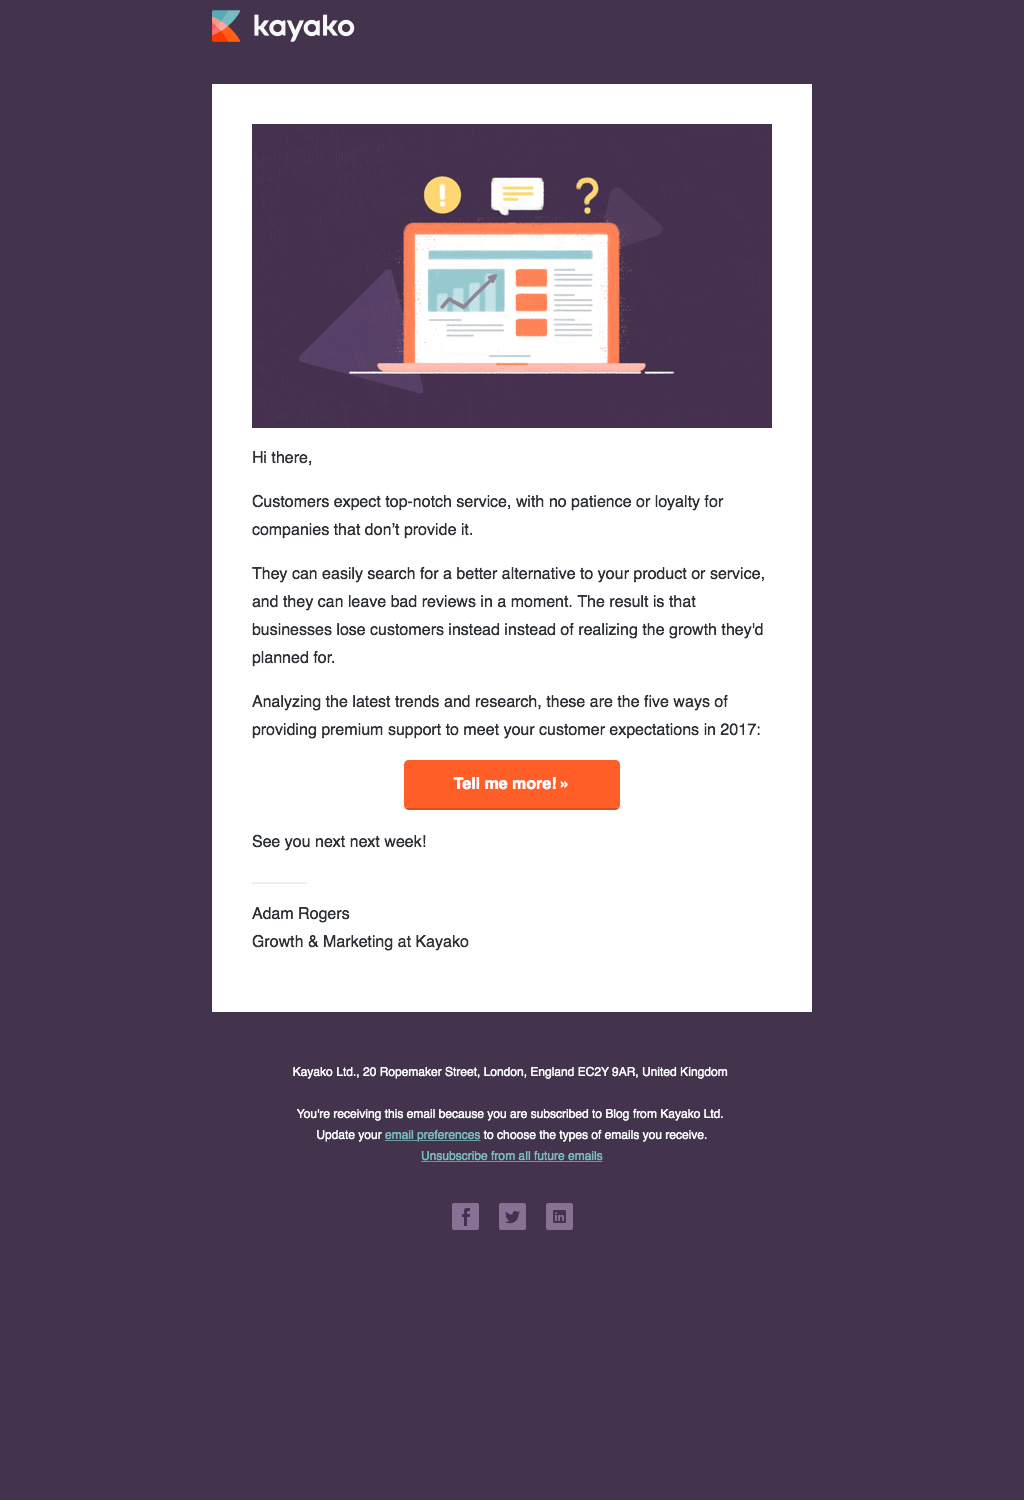 Kayako email newsletter design after rebranding